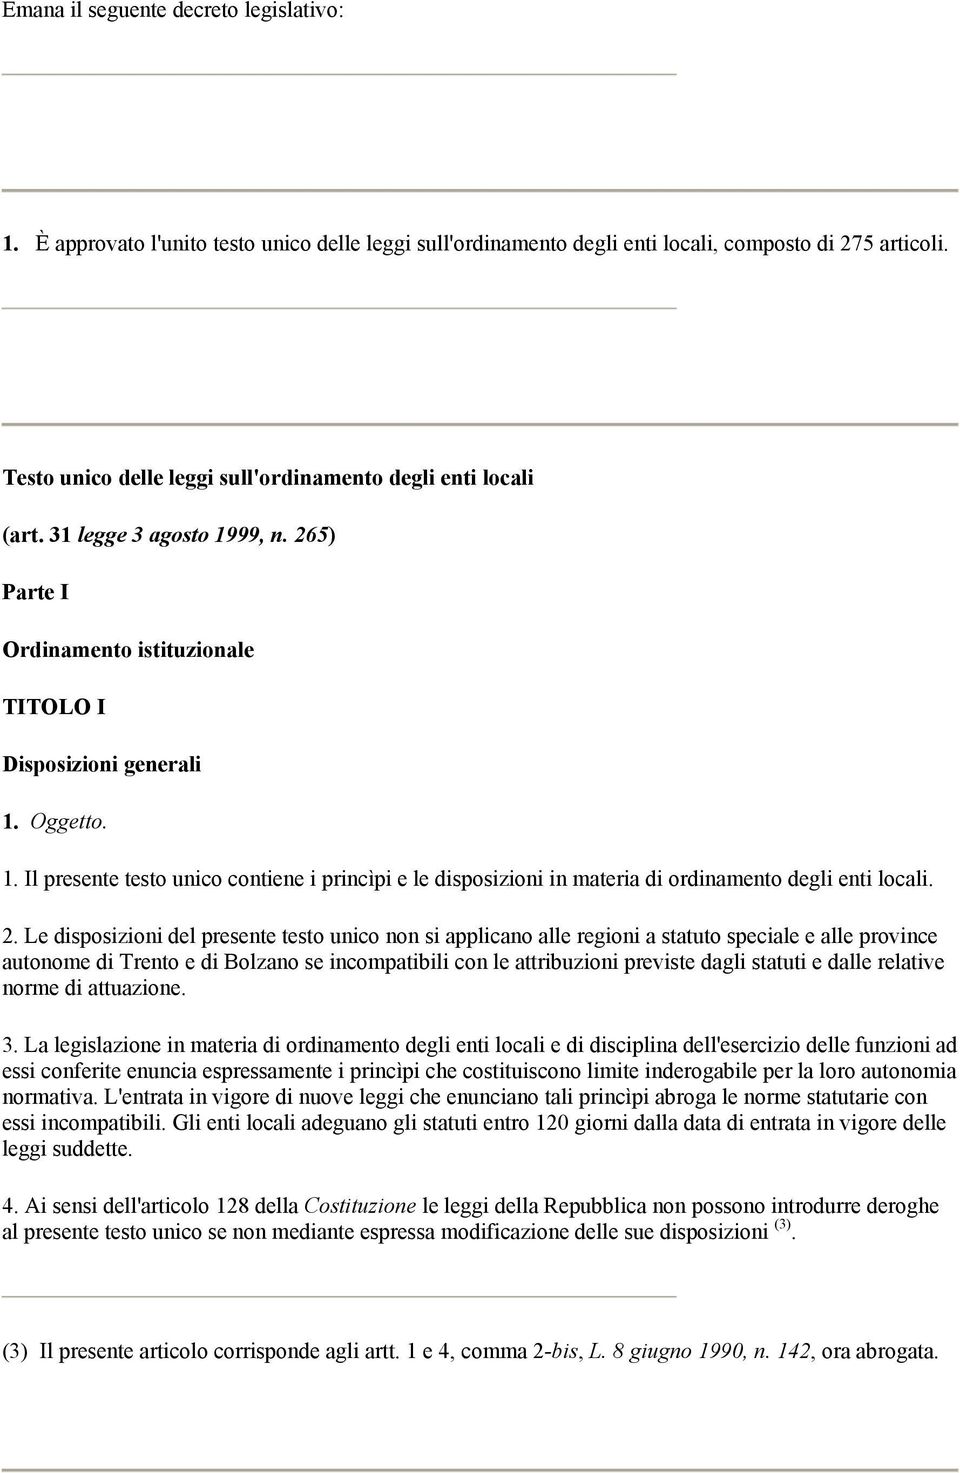 2. Le disposizioni del presente testo unico non si applicano alle regioni a statuto speciale e alle province autonome di Trento e di Bolzano se incompatibili con le attribuzioni previste dagli